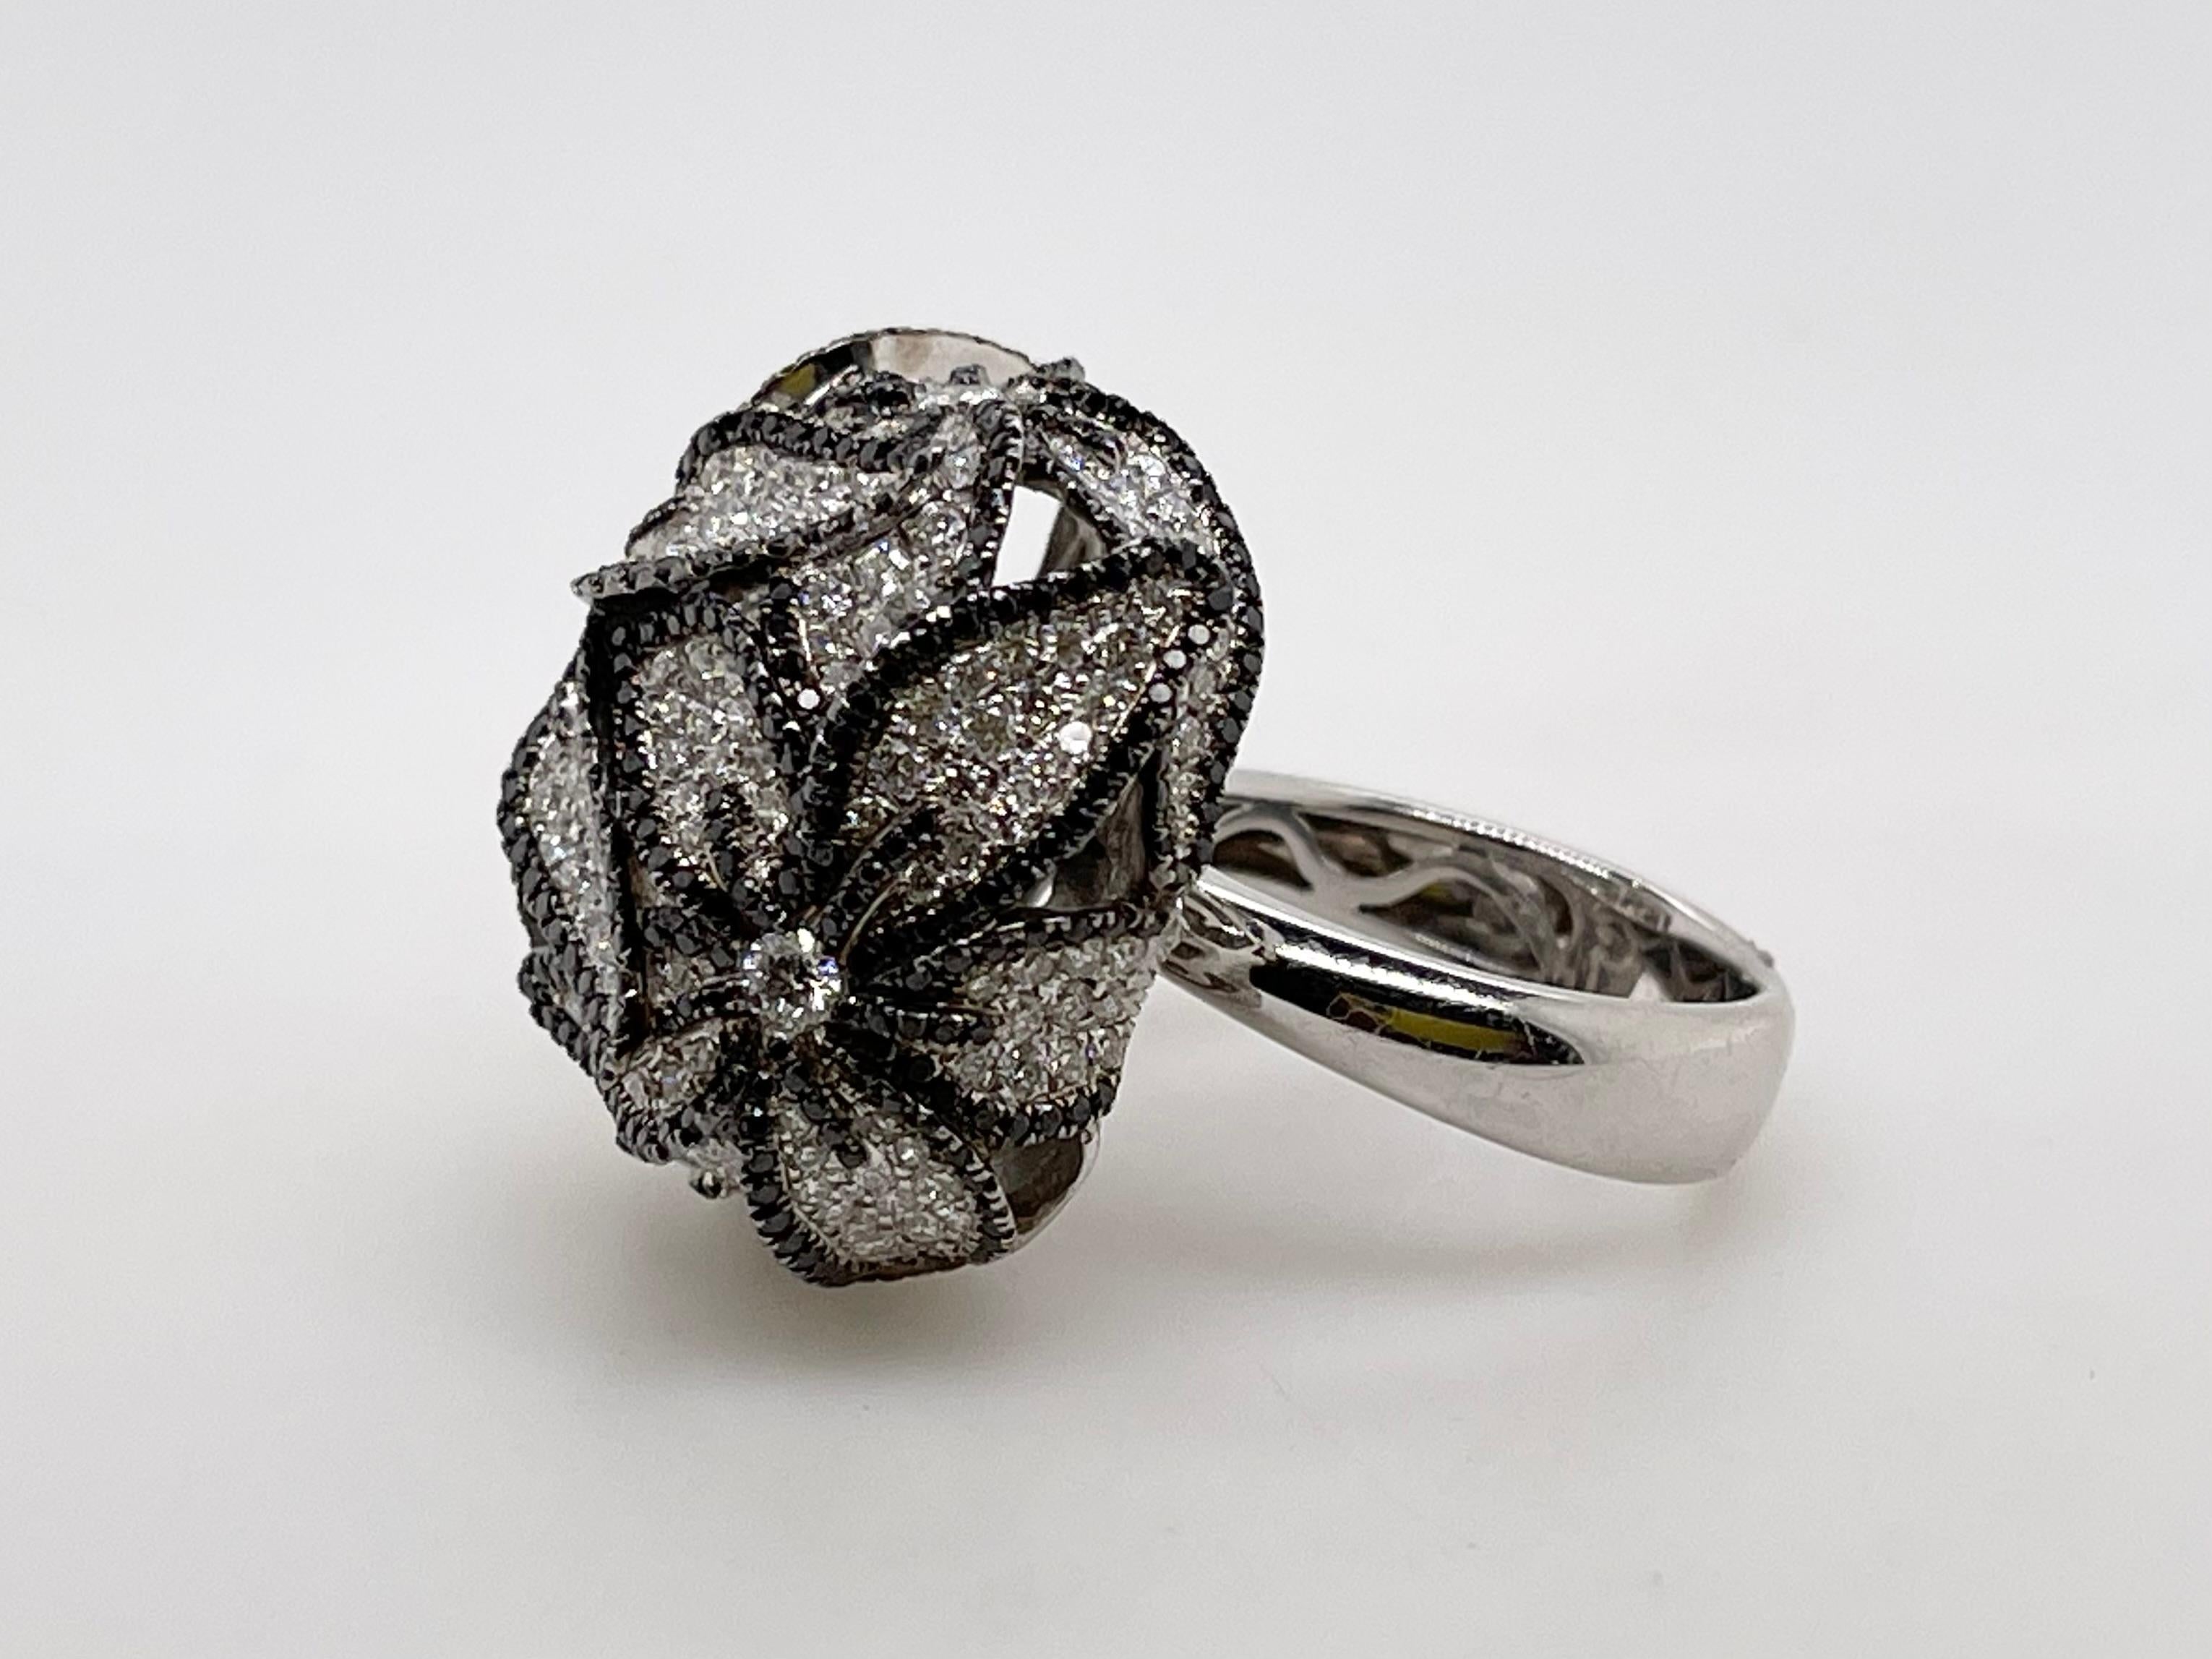 Bague fleur en diamant noir et blanc
or blanc 18kt
277 diamants ronds taille brillant = 3,01ct
510 diamants noirs = 1,76ct